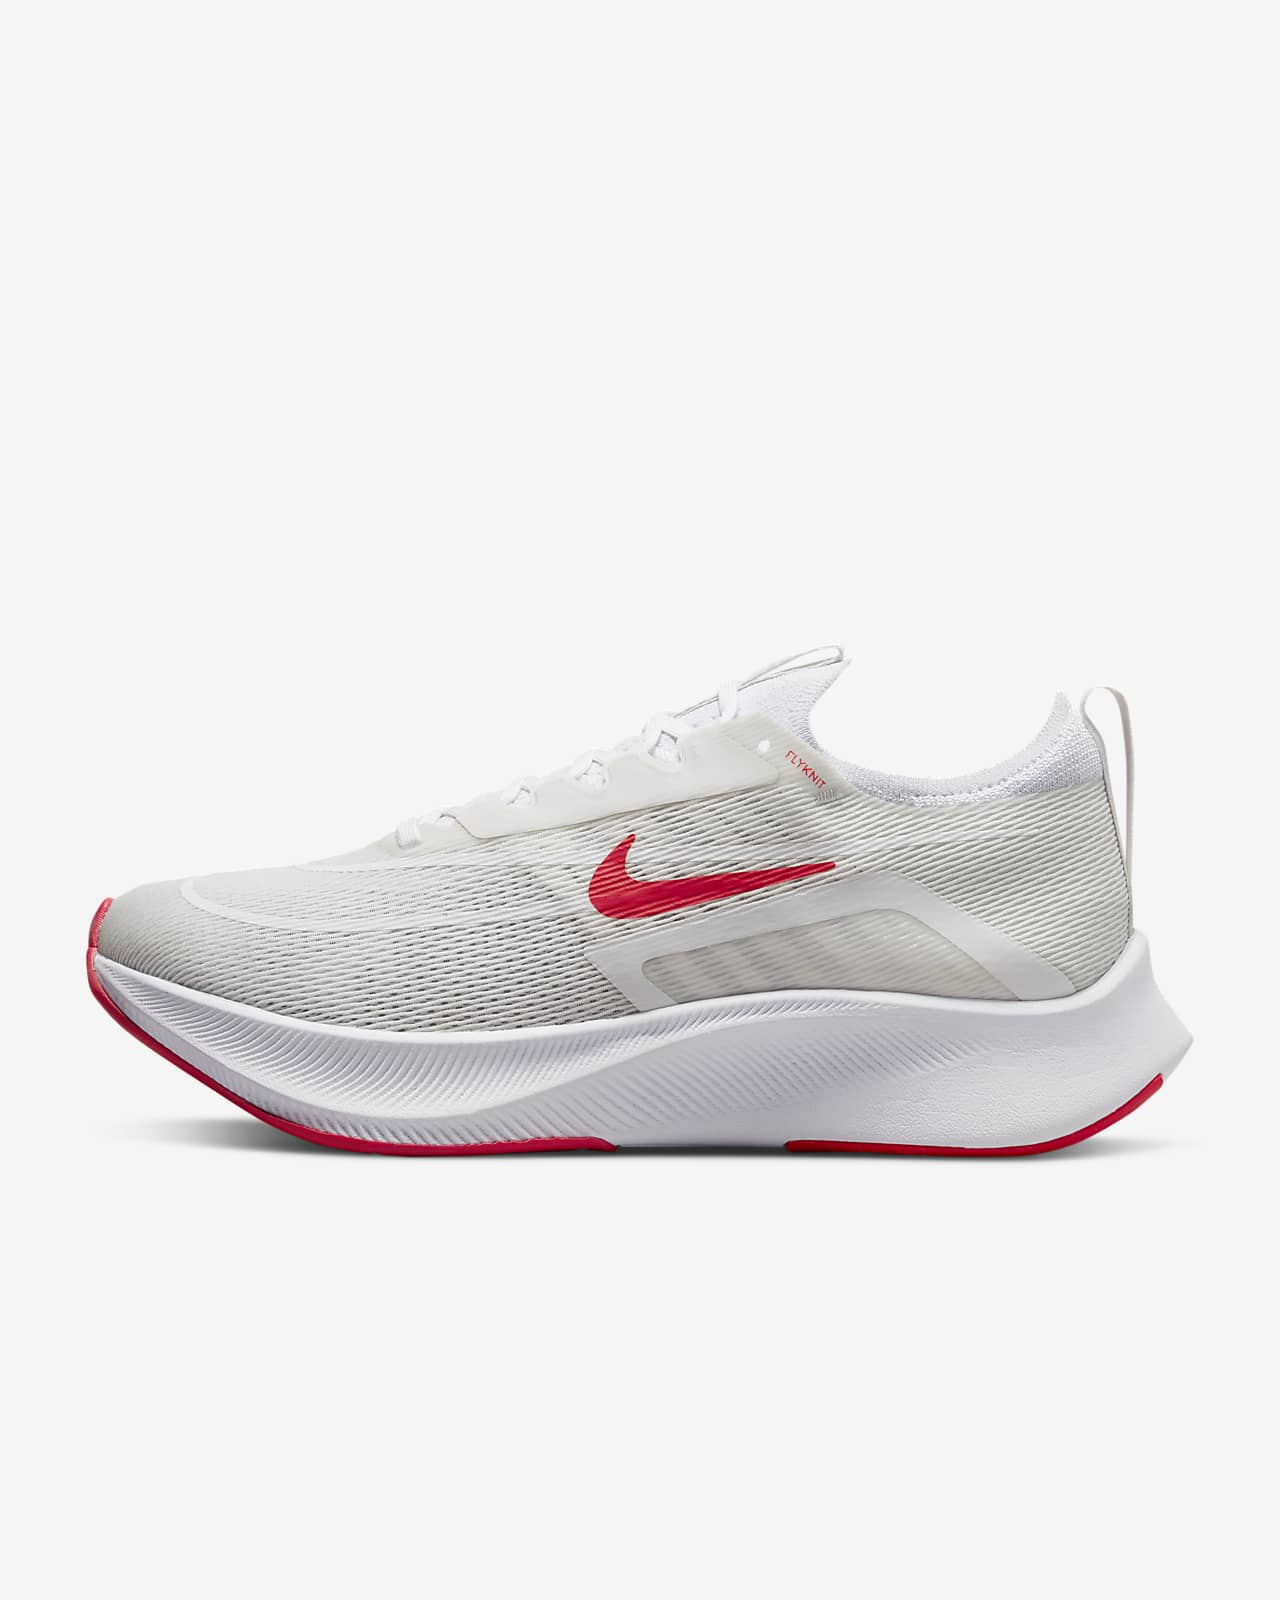 Ανδρικό παπούτσι για τρέξιμο σε δρόμο Nike Zoom Fly 4